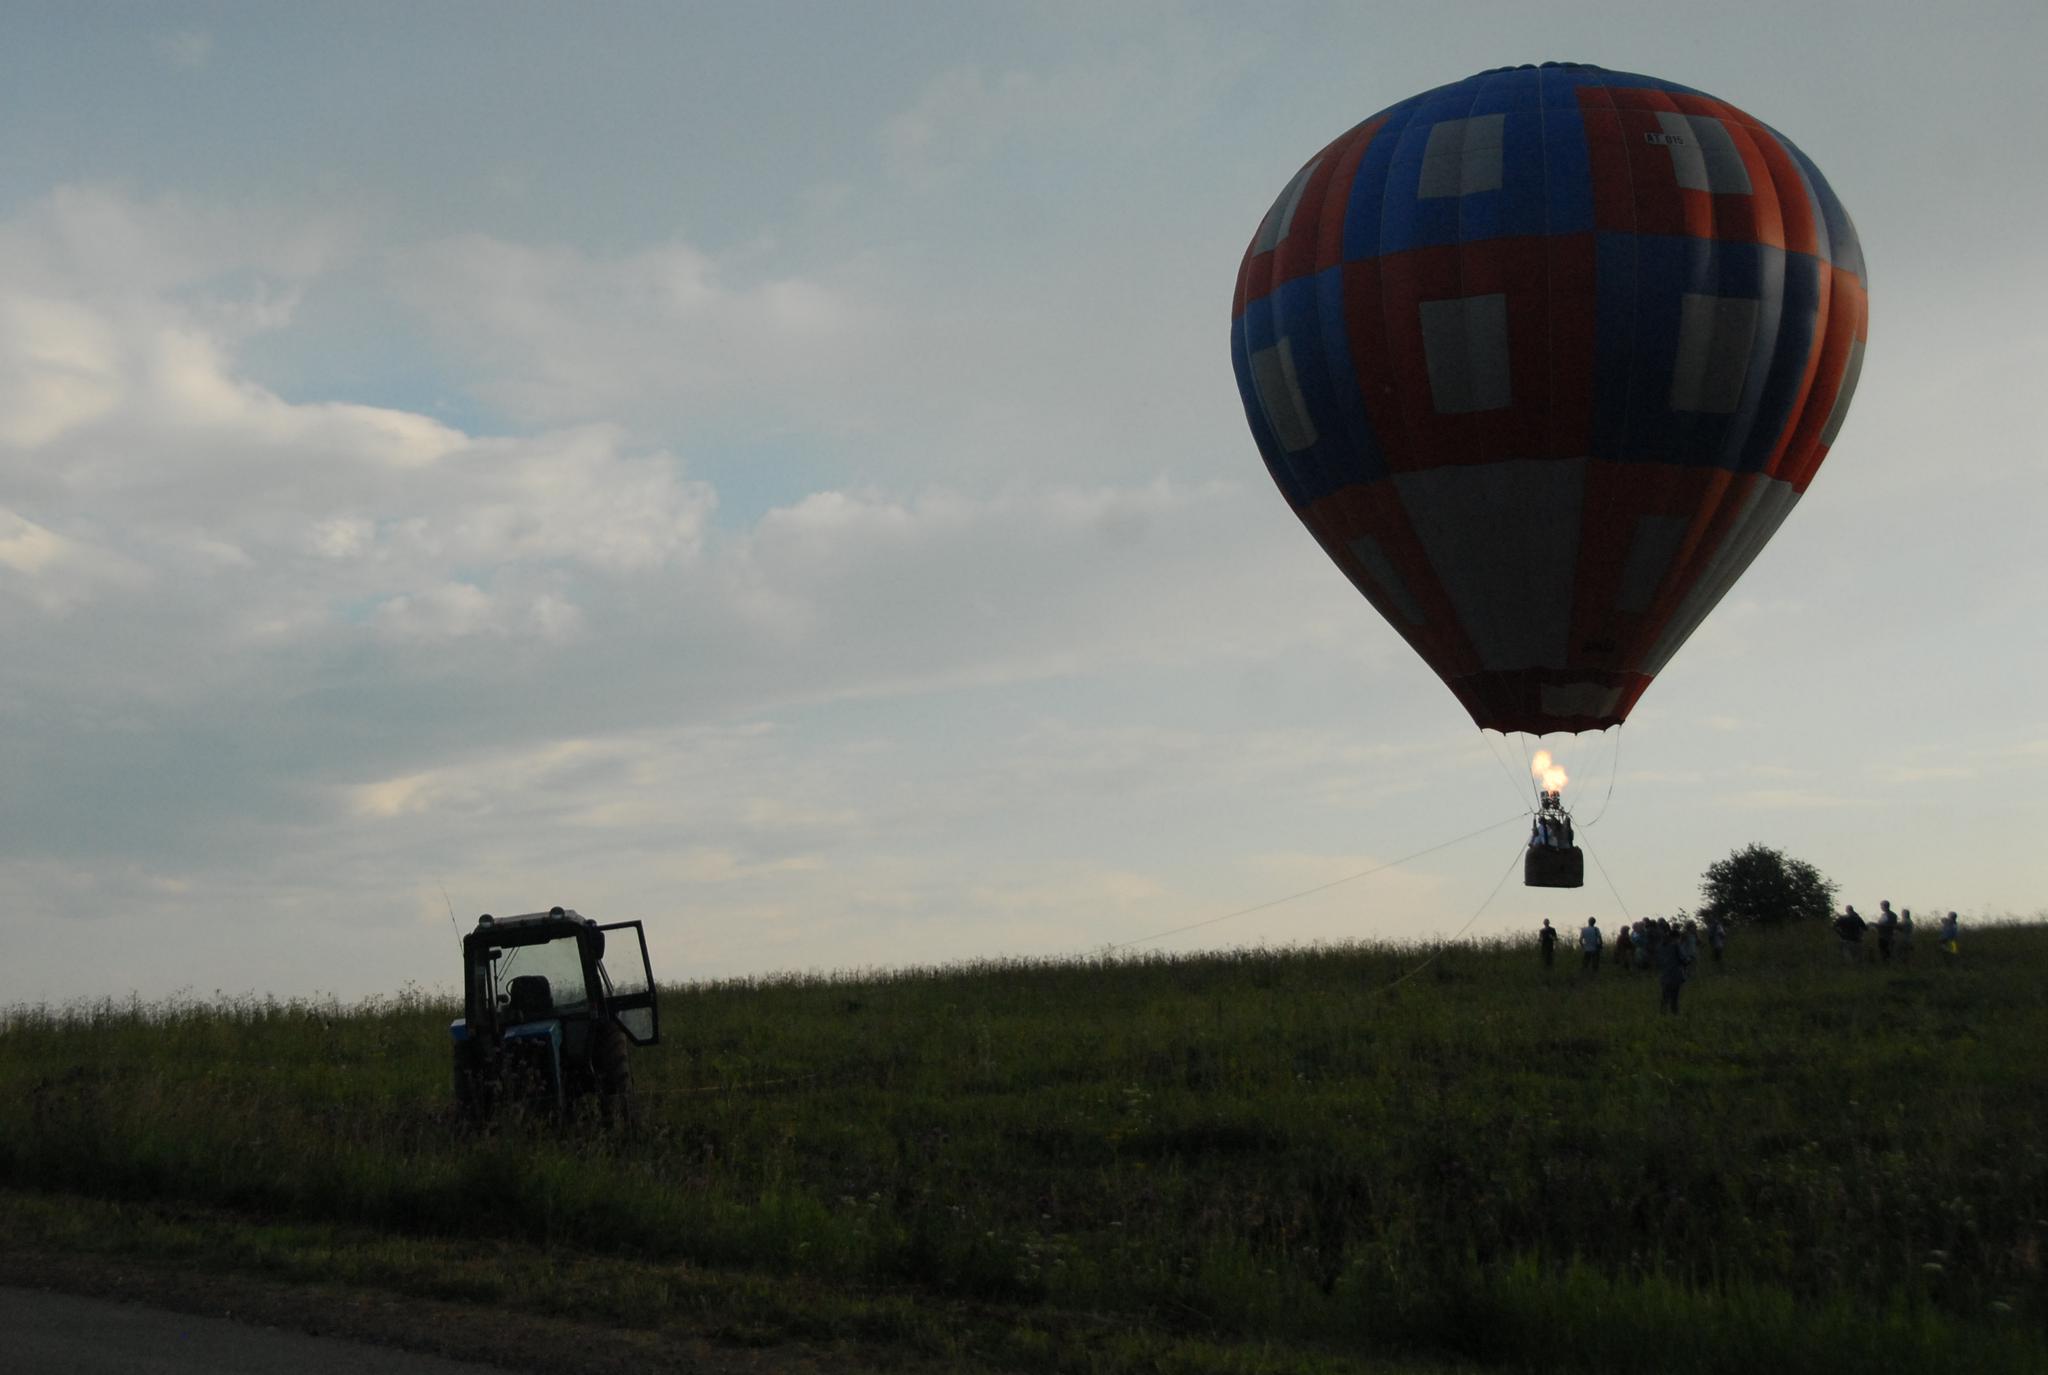 Застряли на высоте на воздушном шаре. Монгольфьер воздушный шар. Человек на воздушном шаре. Воздушный шар с людьми. Воздушный шар садится.